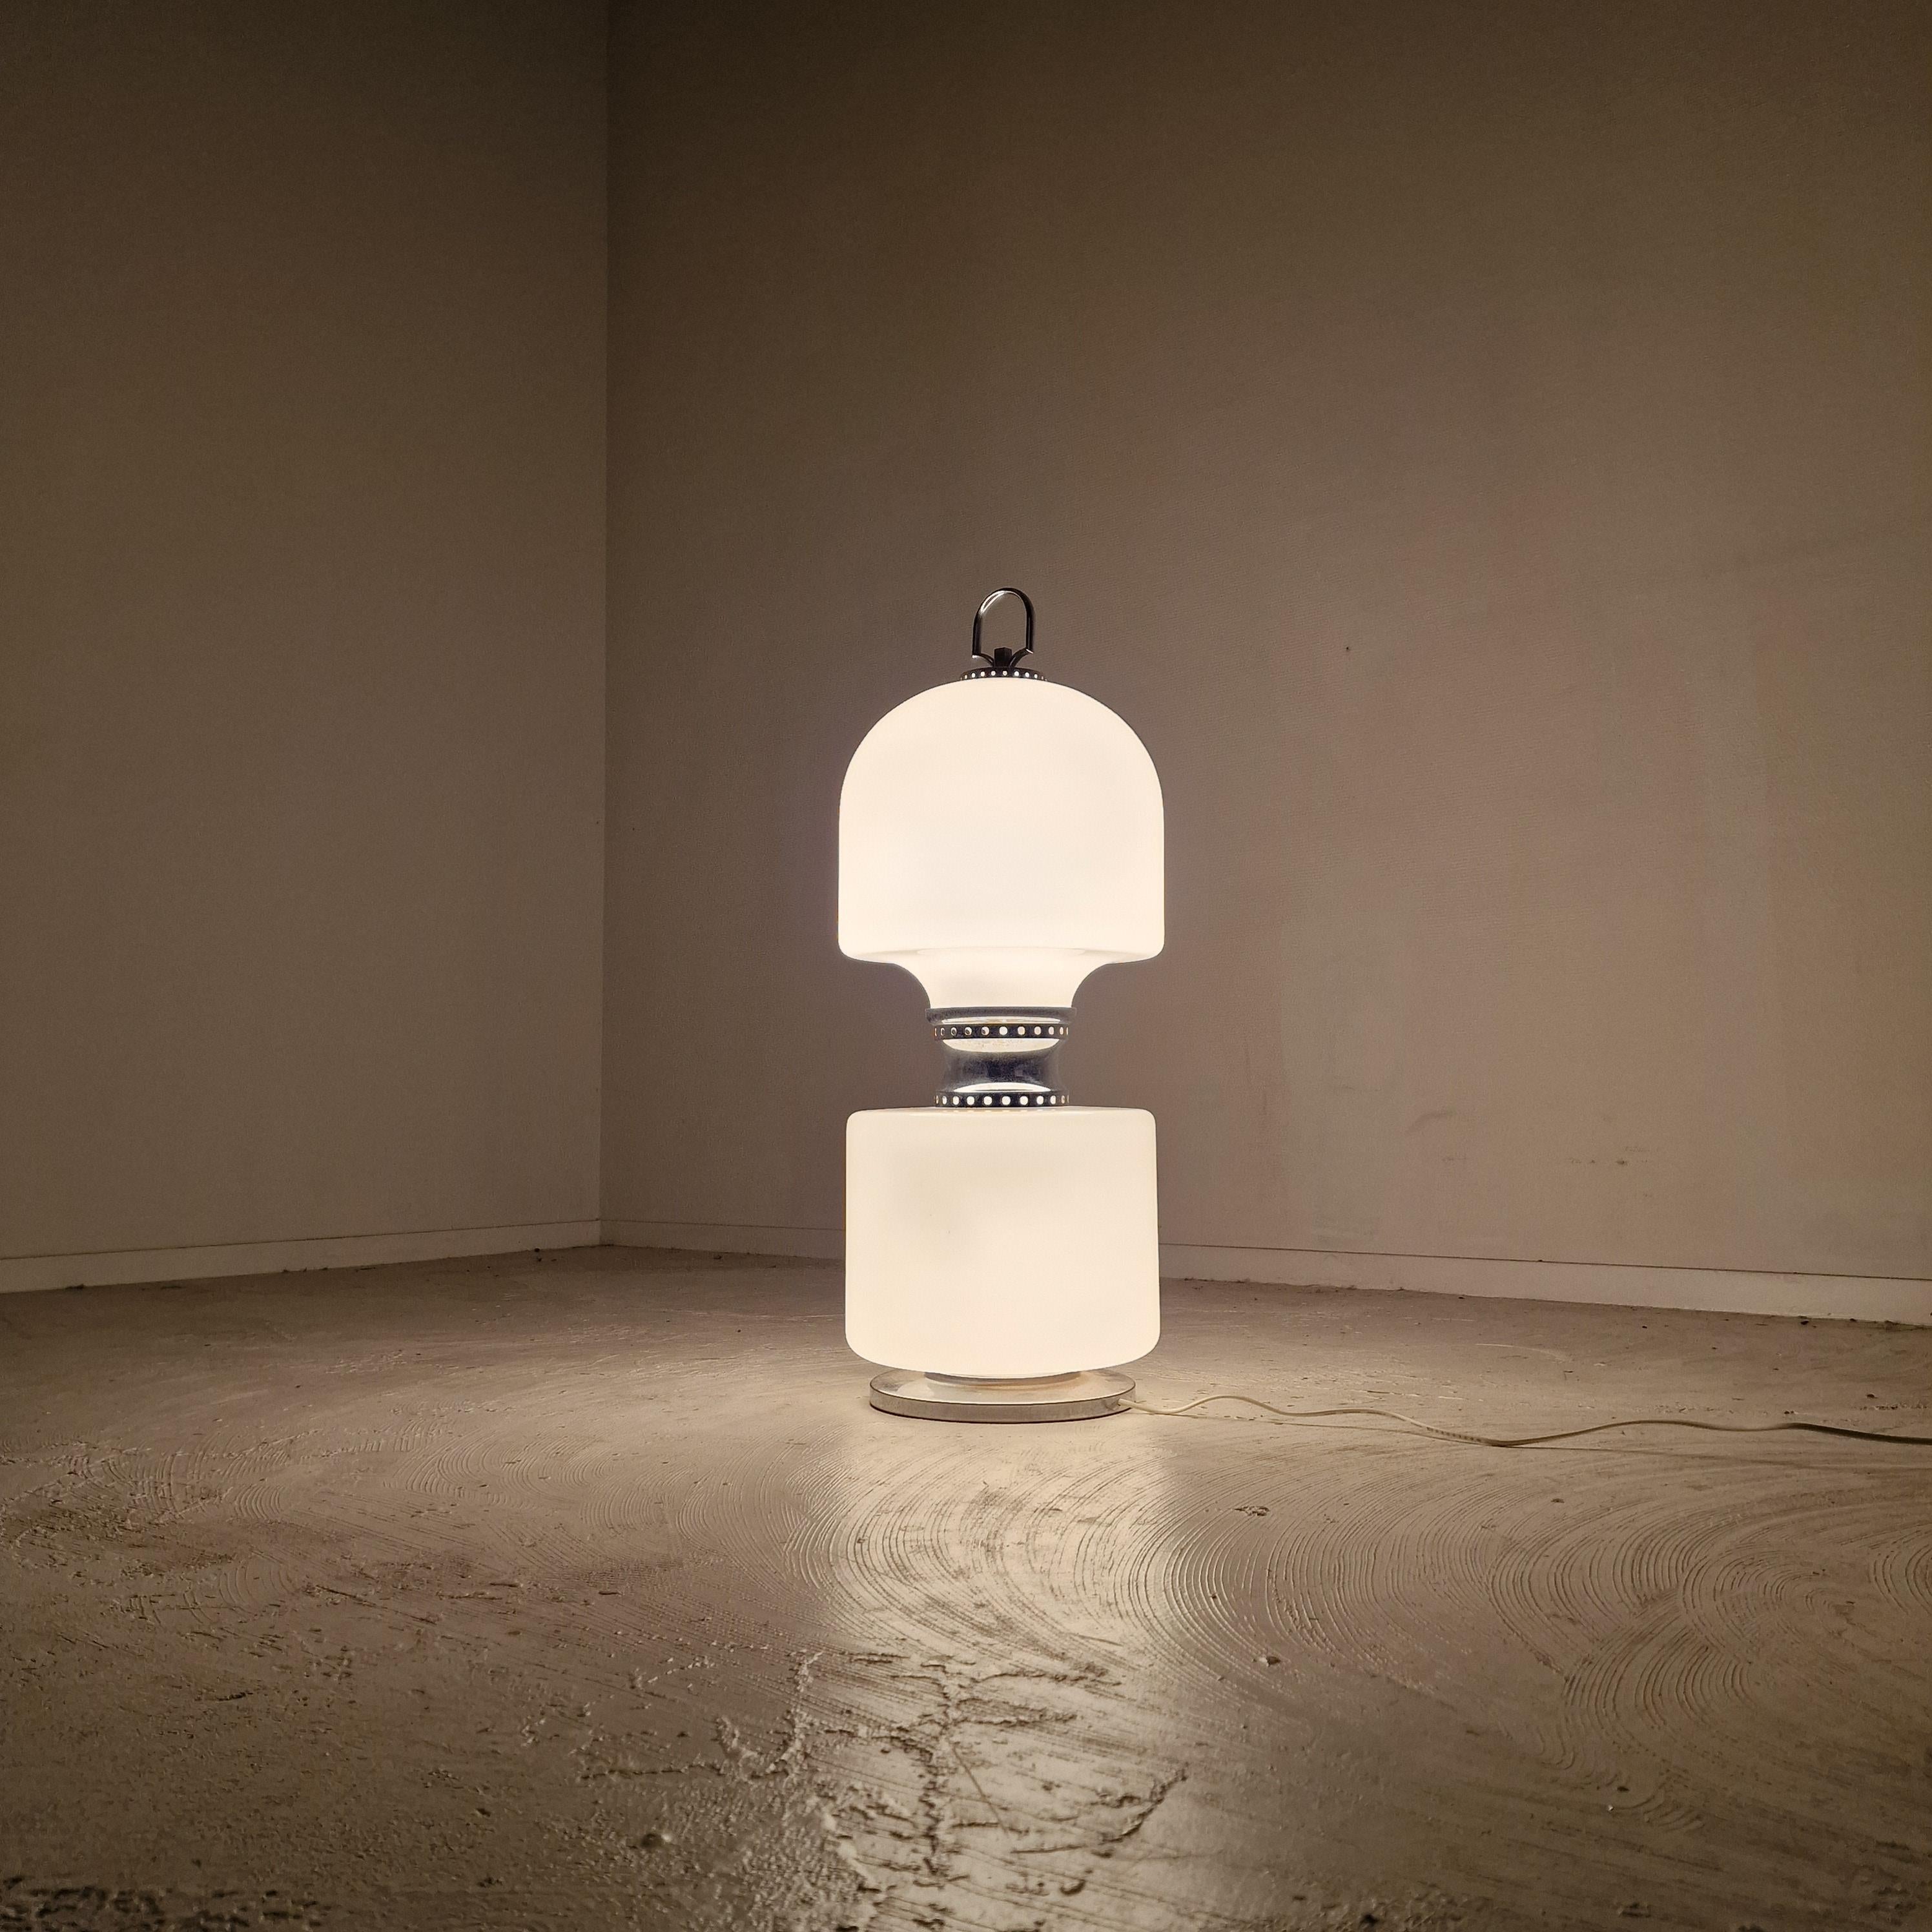 Magnifique lampadaire italien moderne à postmoderne Carlo Nason avec verre soufflé blanc de Murano et chrome, années 1970.

Très bon état, tout en gardant à l'esprit qu'il s'agit d'un produit vintage et non neuf, qui présente donc des signes